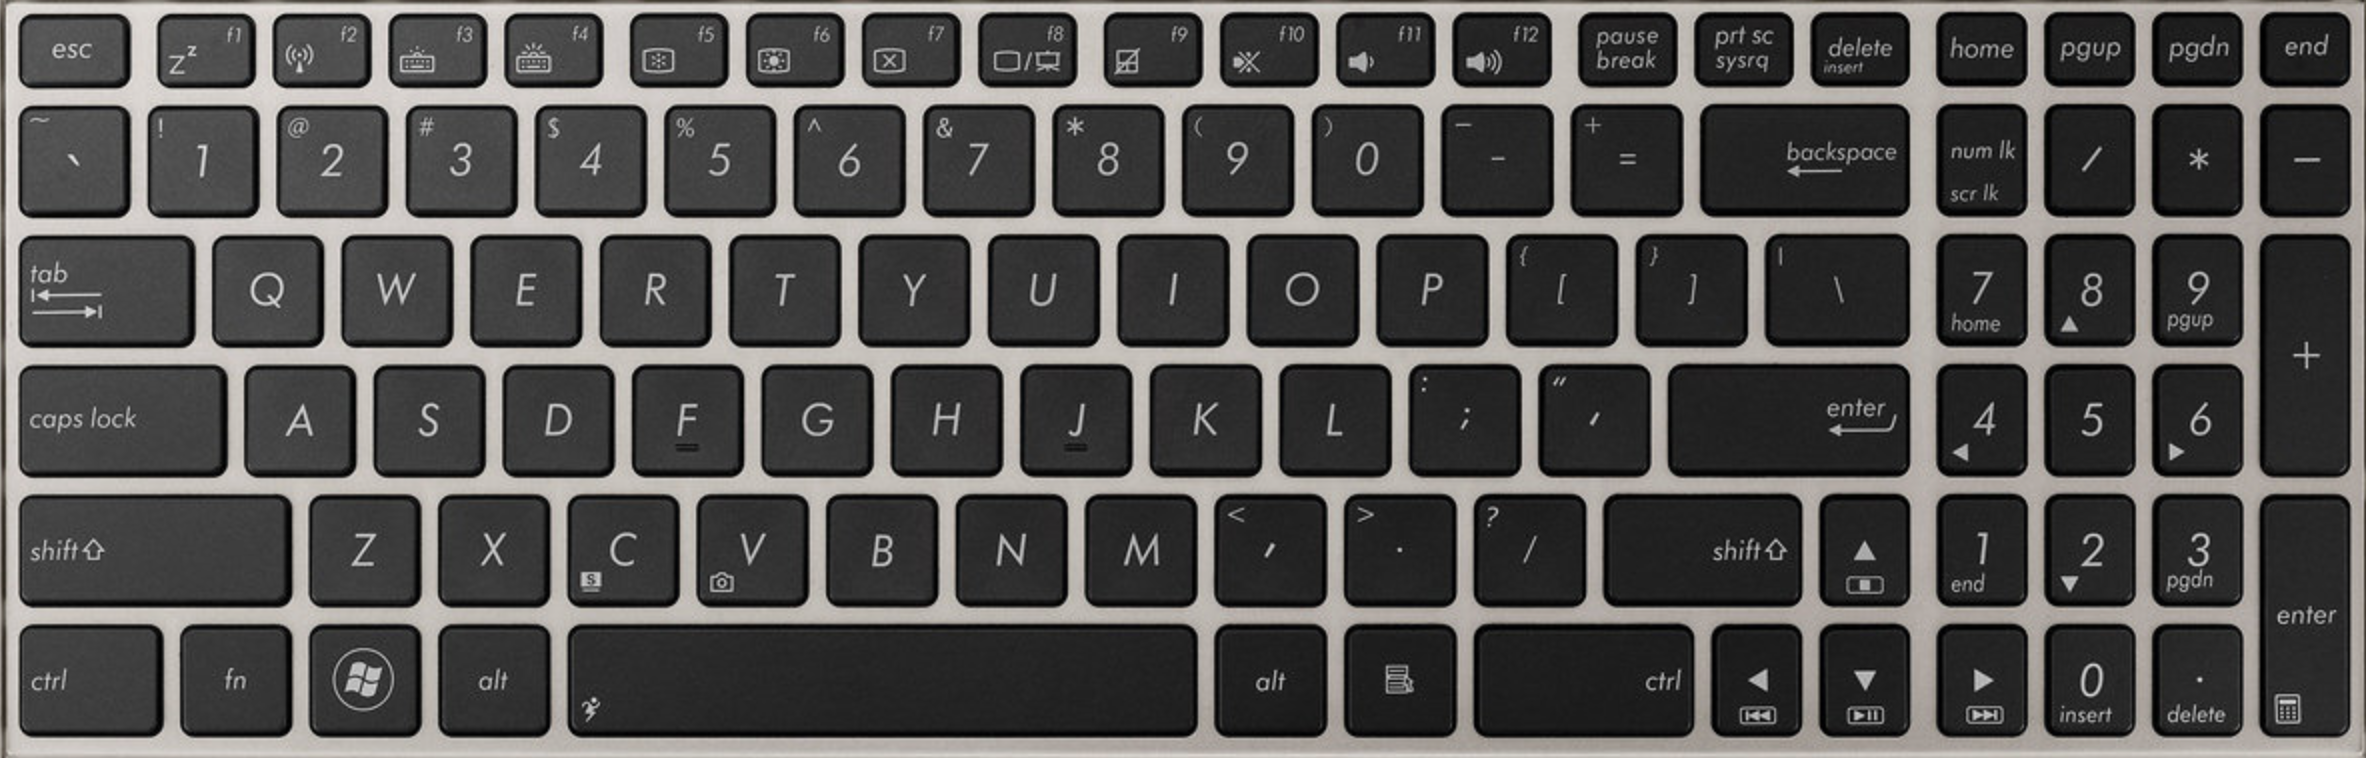 asus-UX51V-replacement-laptop-keyboard-keys